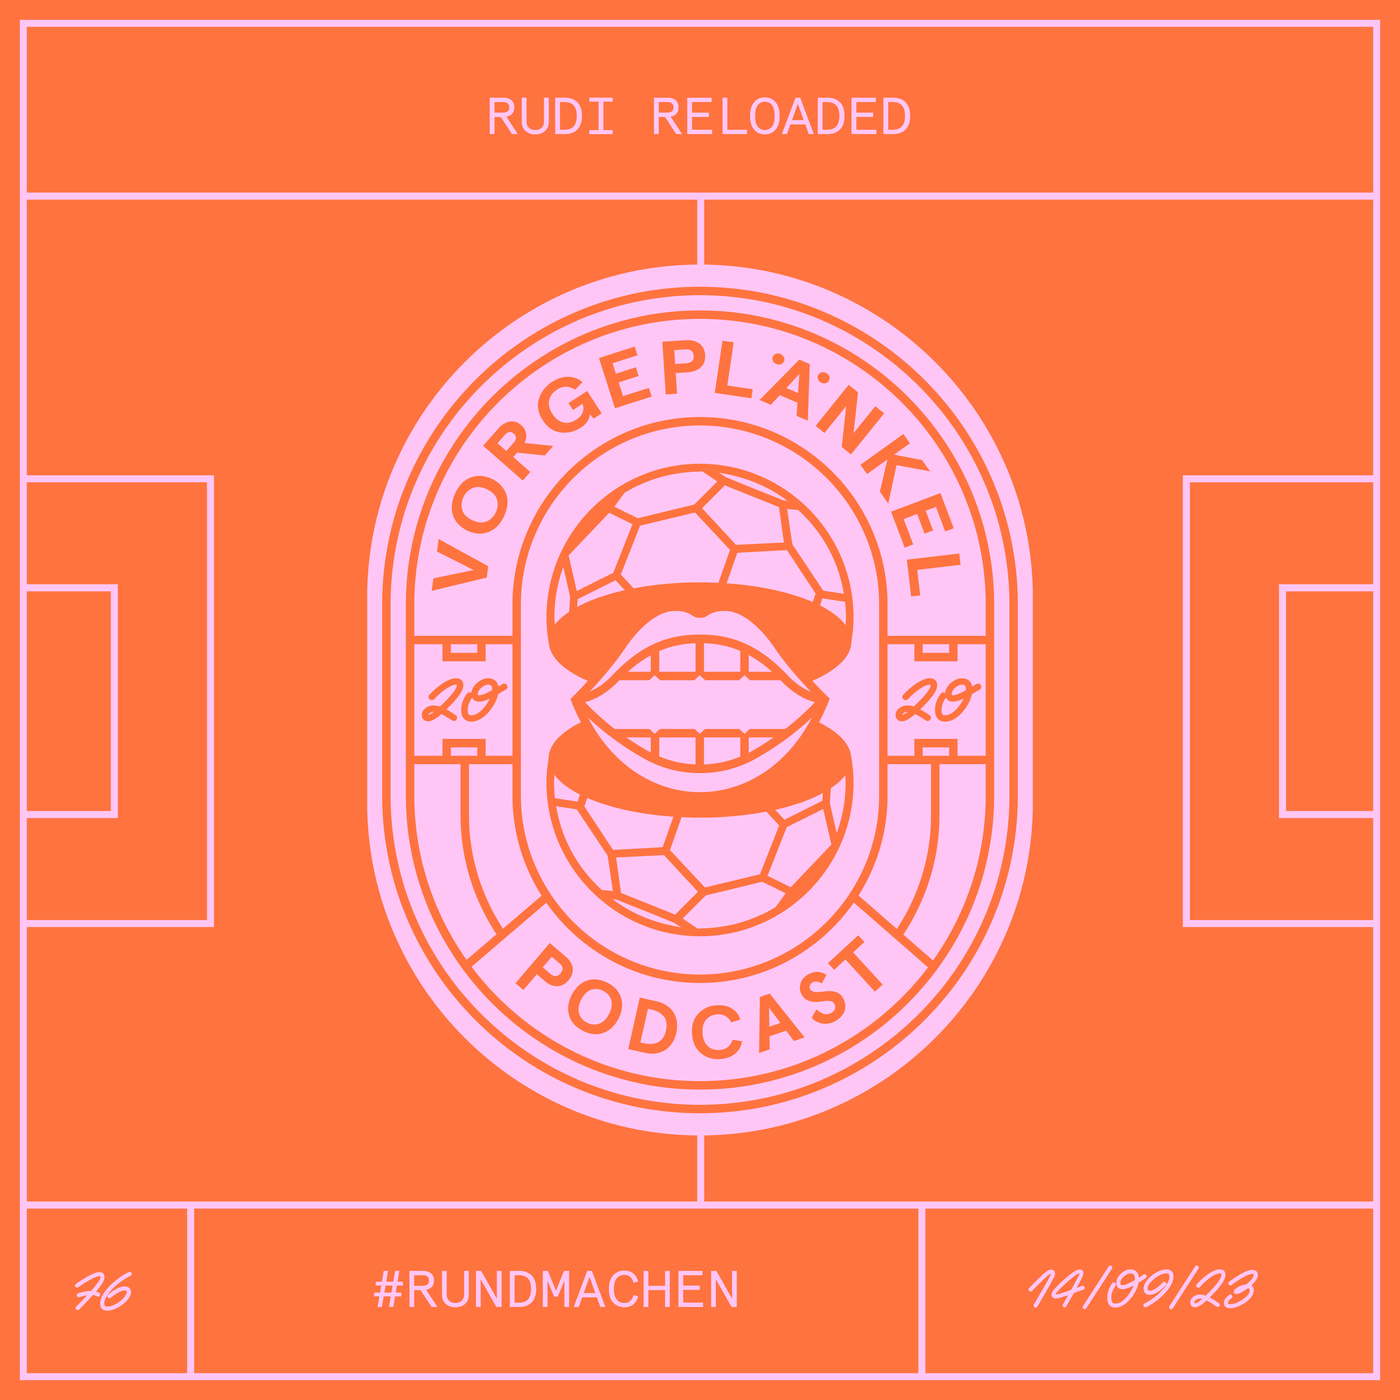 76 - Rudi Reloaded